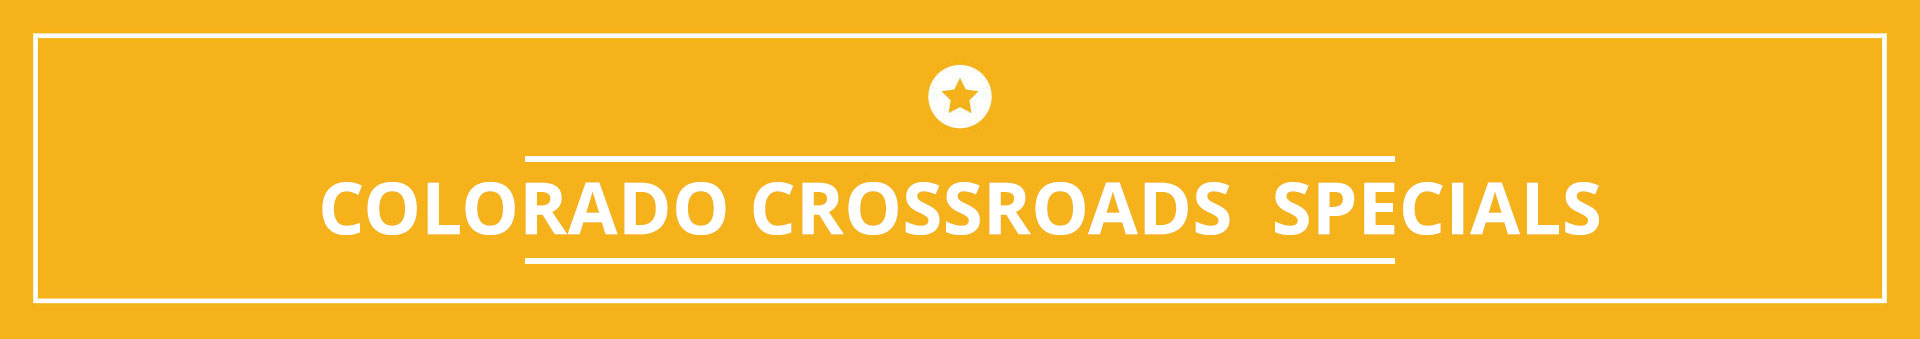 Colorado Crossroads Weekly Specials